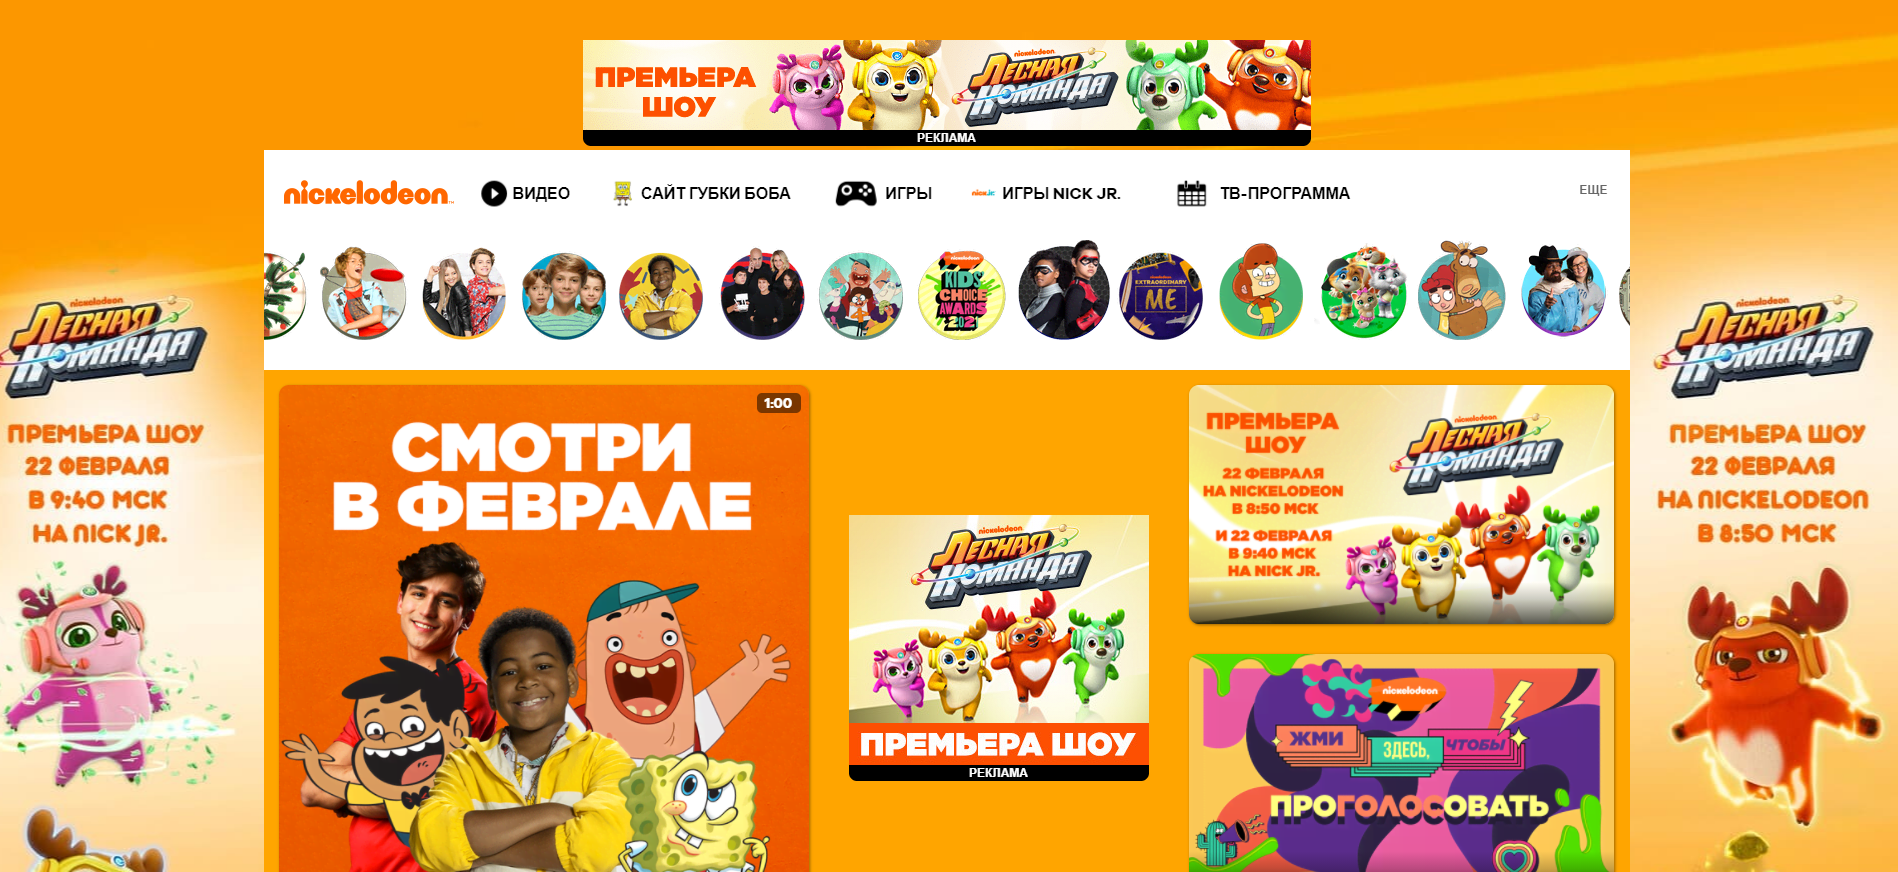 Дизайн сайта с основным цветом оранжевым